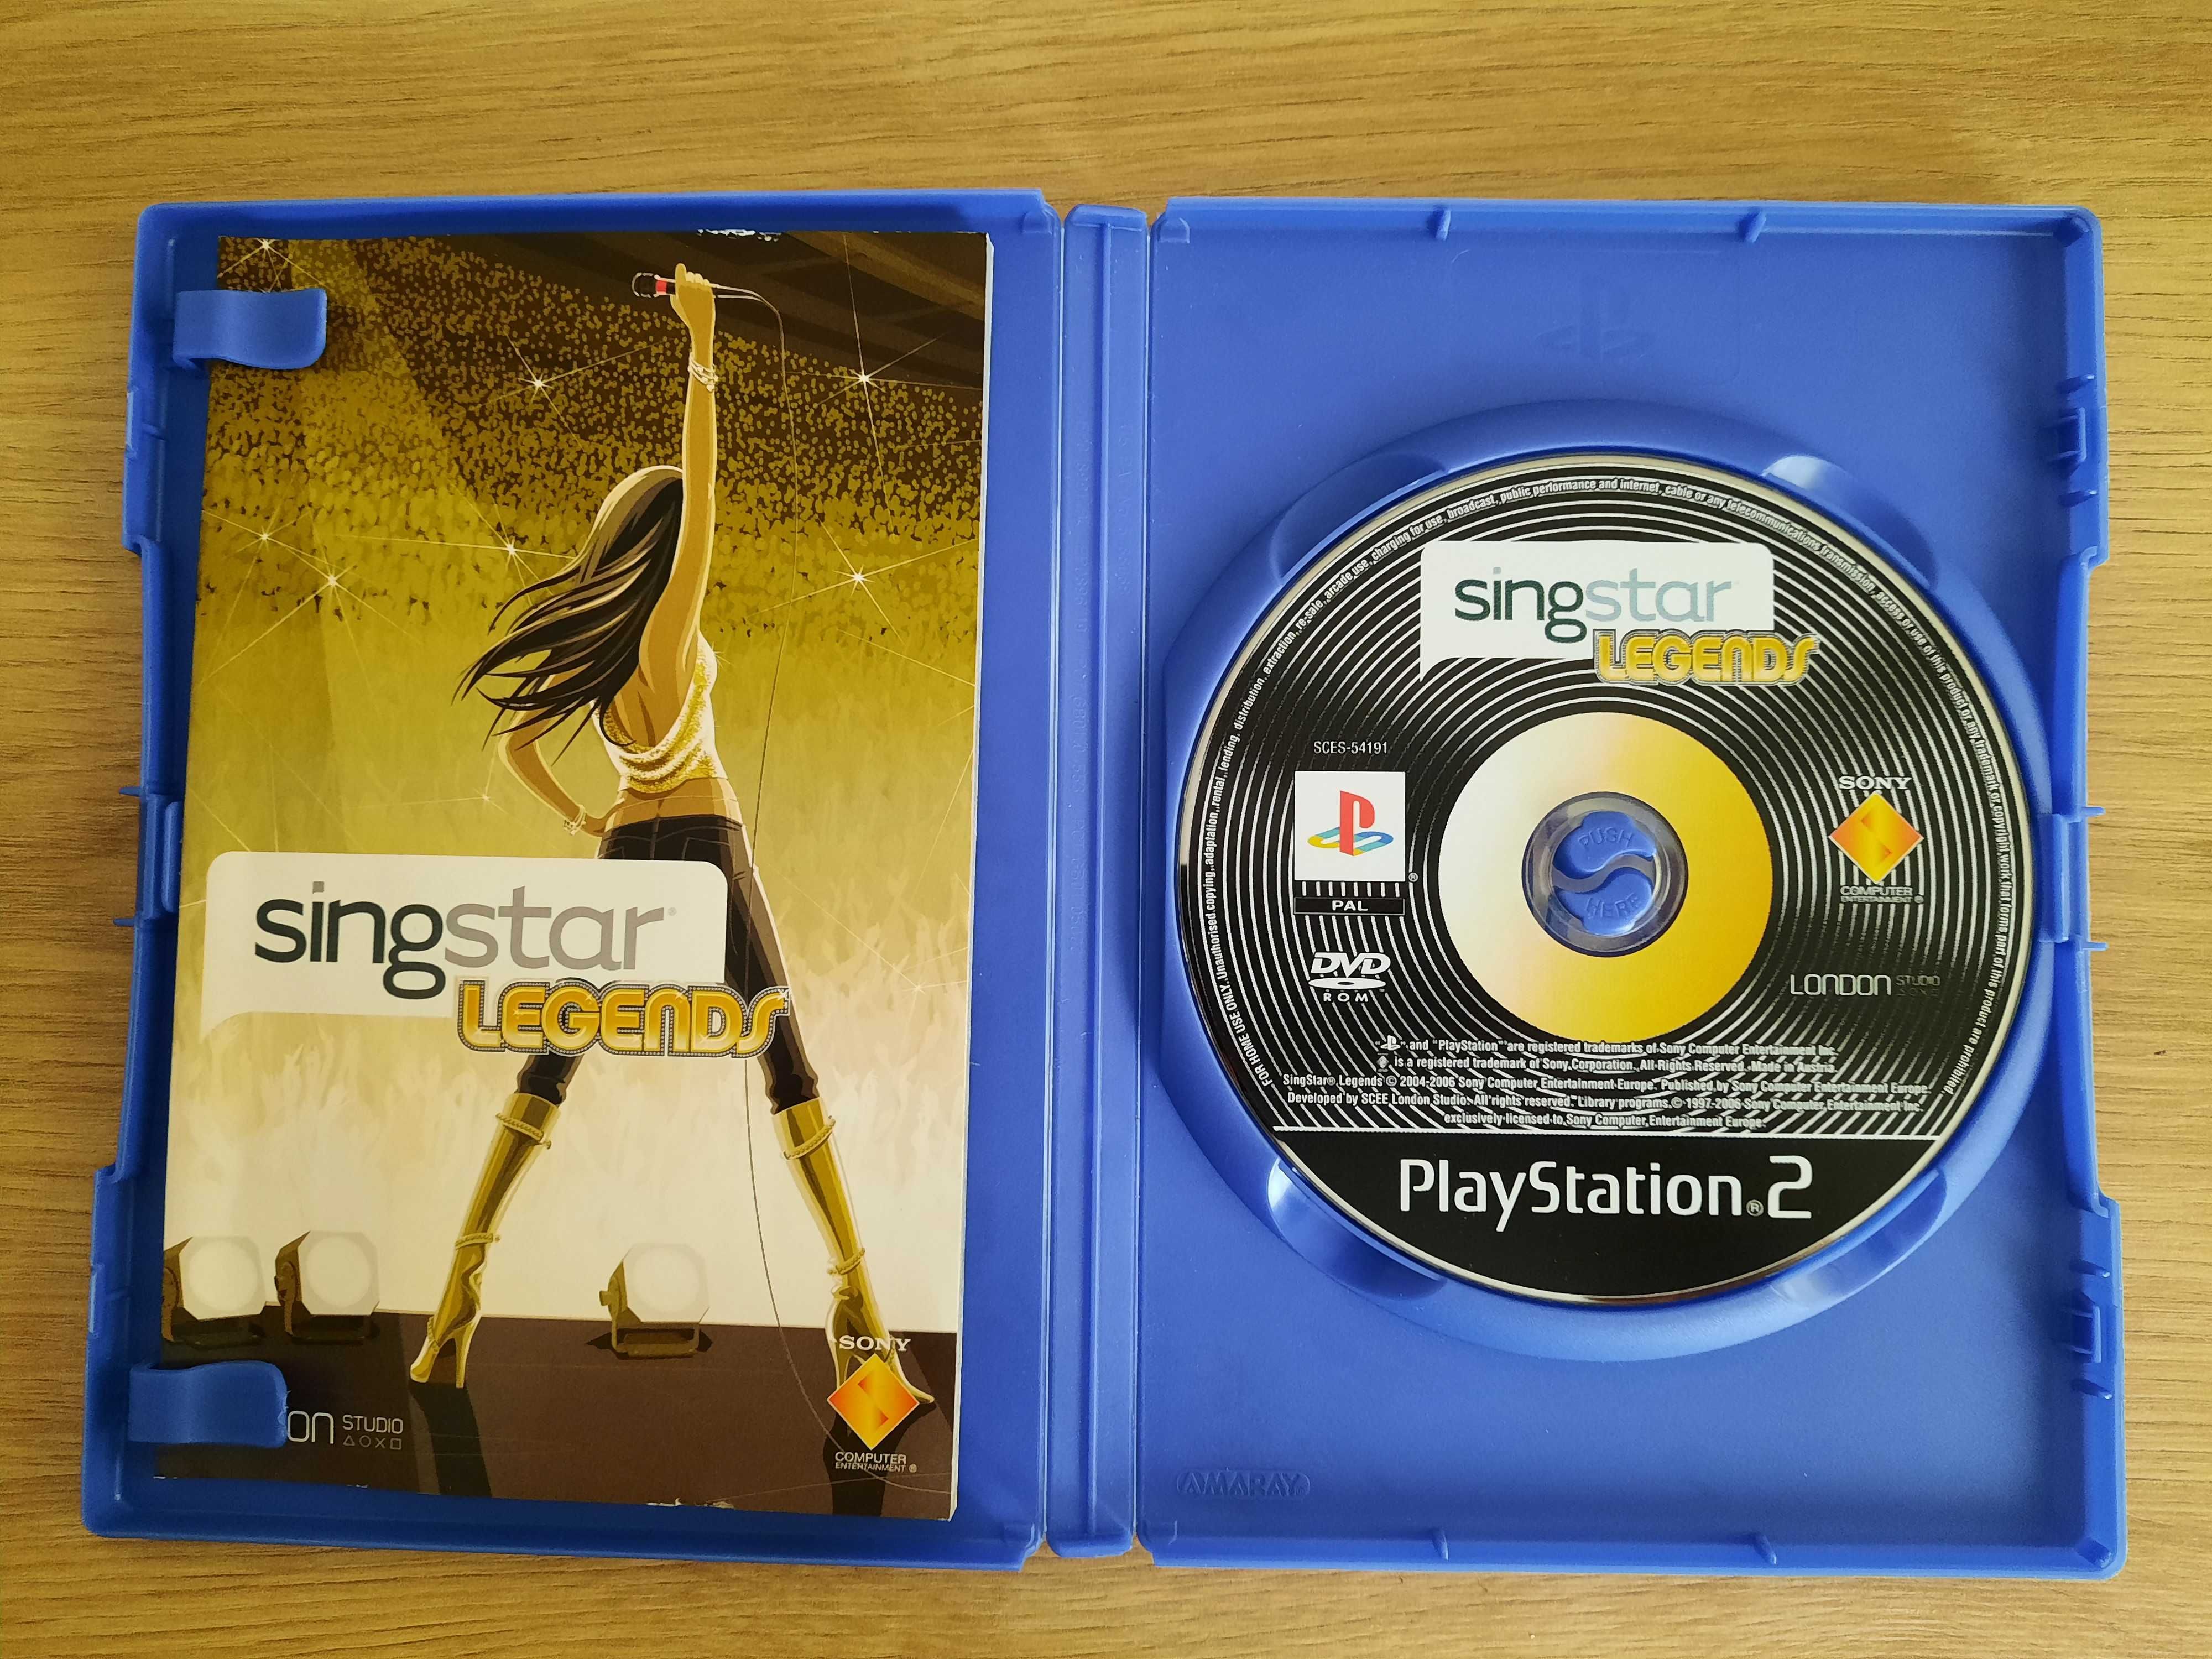 SingStar Legends PL Polskie Wydanie PS2